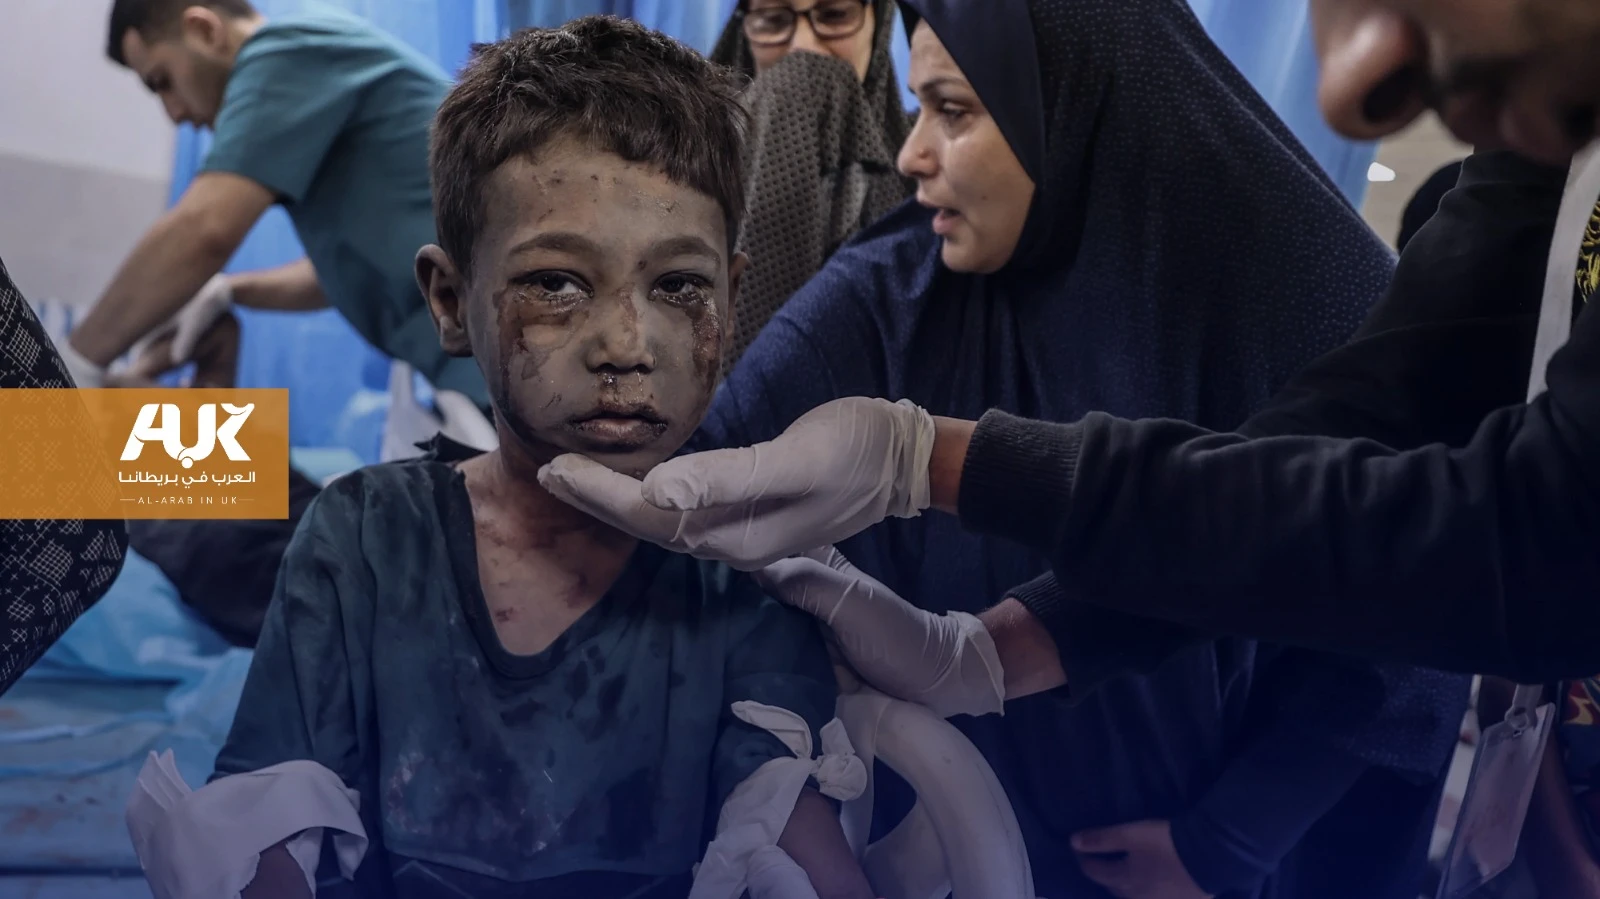 بريطانيا تتجاهل معاناة أطفال غزة المصابين بجروح خطيرة وترفض علاجهم